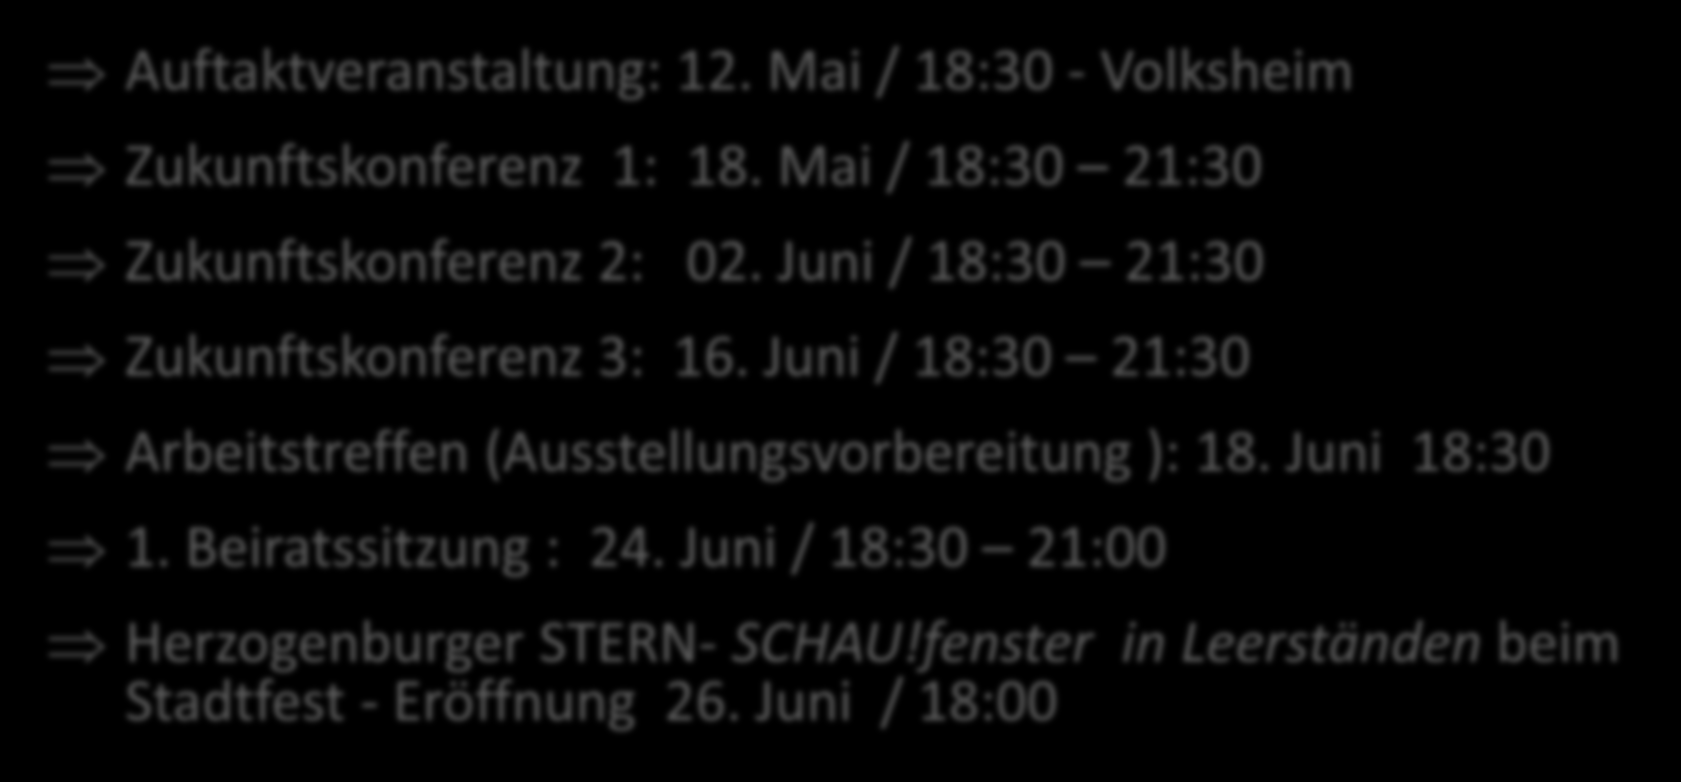 STERN-Bürgerbeteiligungsprozess Auftaktveranstaltung: 12. Mai / 18:30 - Volksheim Zukunftskonferenz 1: 18. Mai / 18:30 21:30 Zukunftskonferenz 2: 02. Juni / 18:30 21:30 Zukunftskonferenz 3: 16.